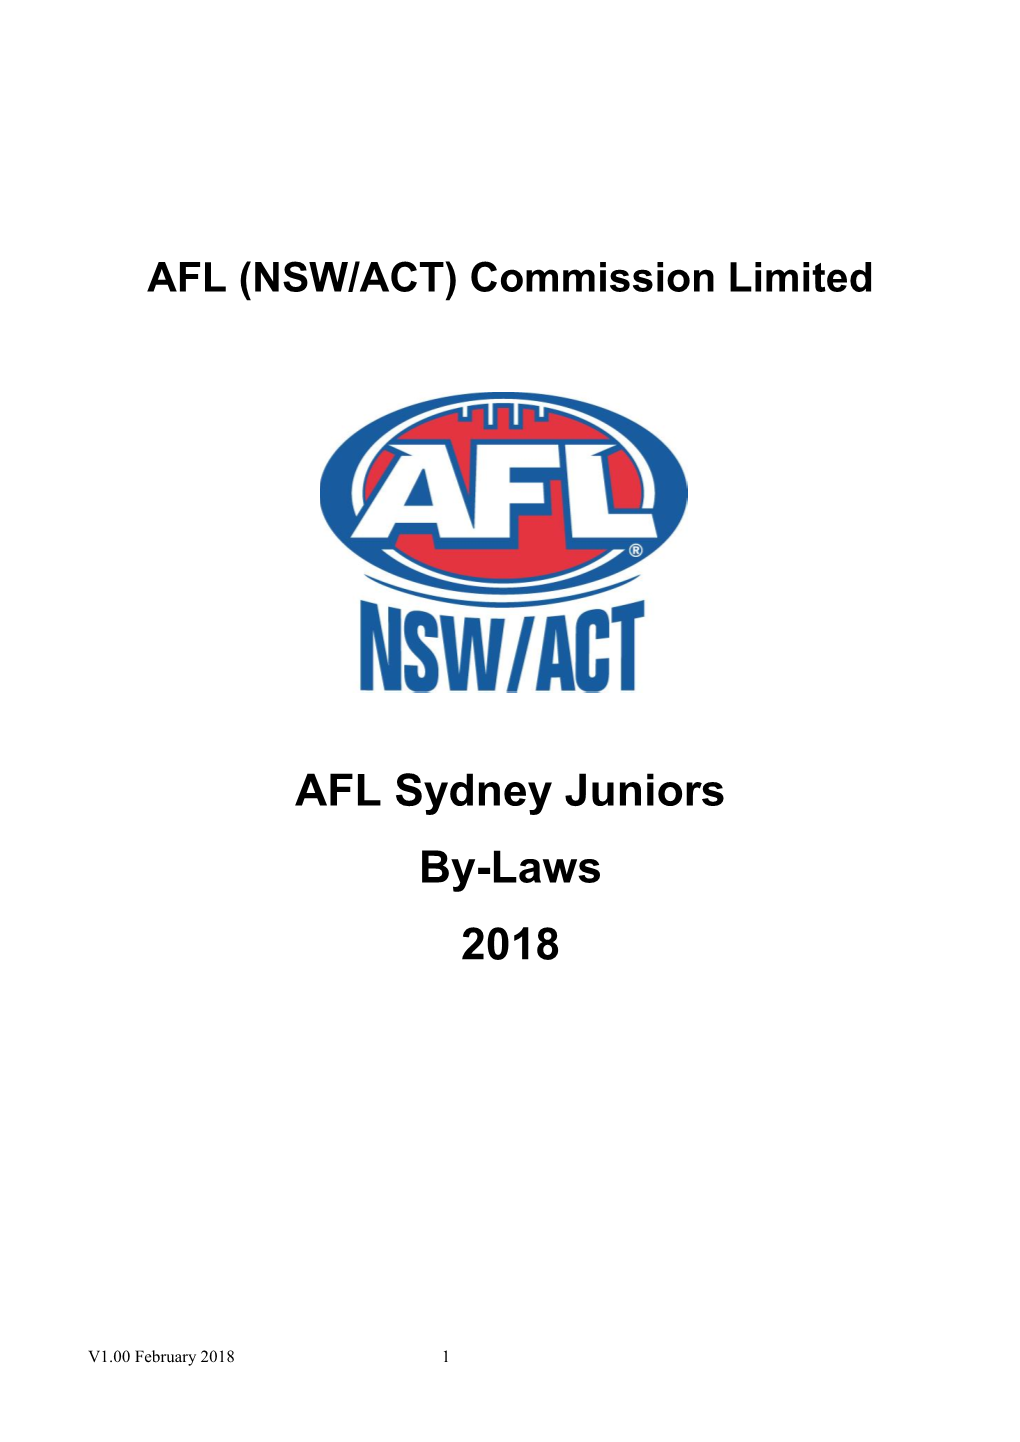 AFL Sydney Juniors By-Laws 2018